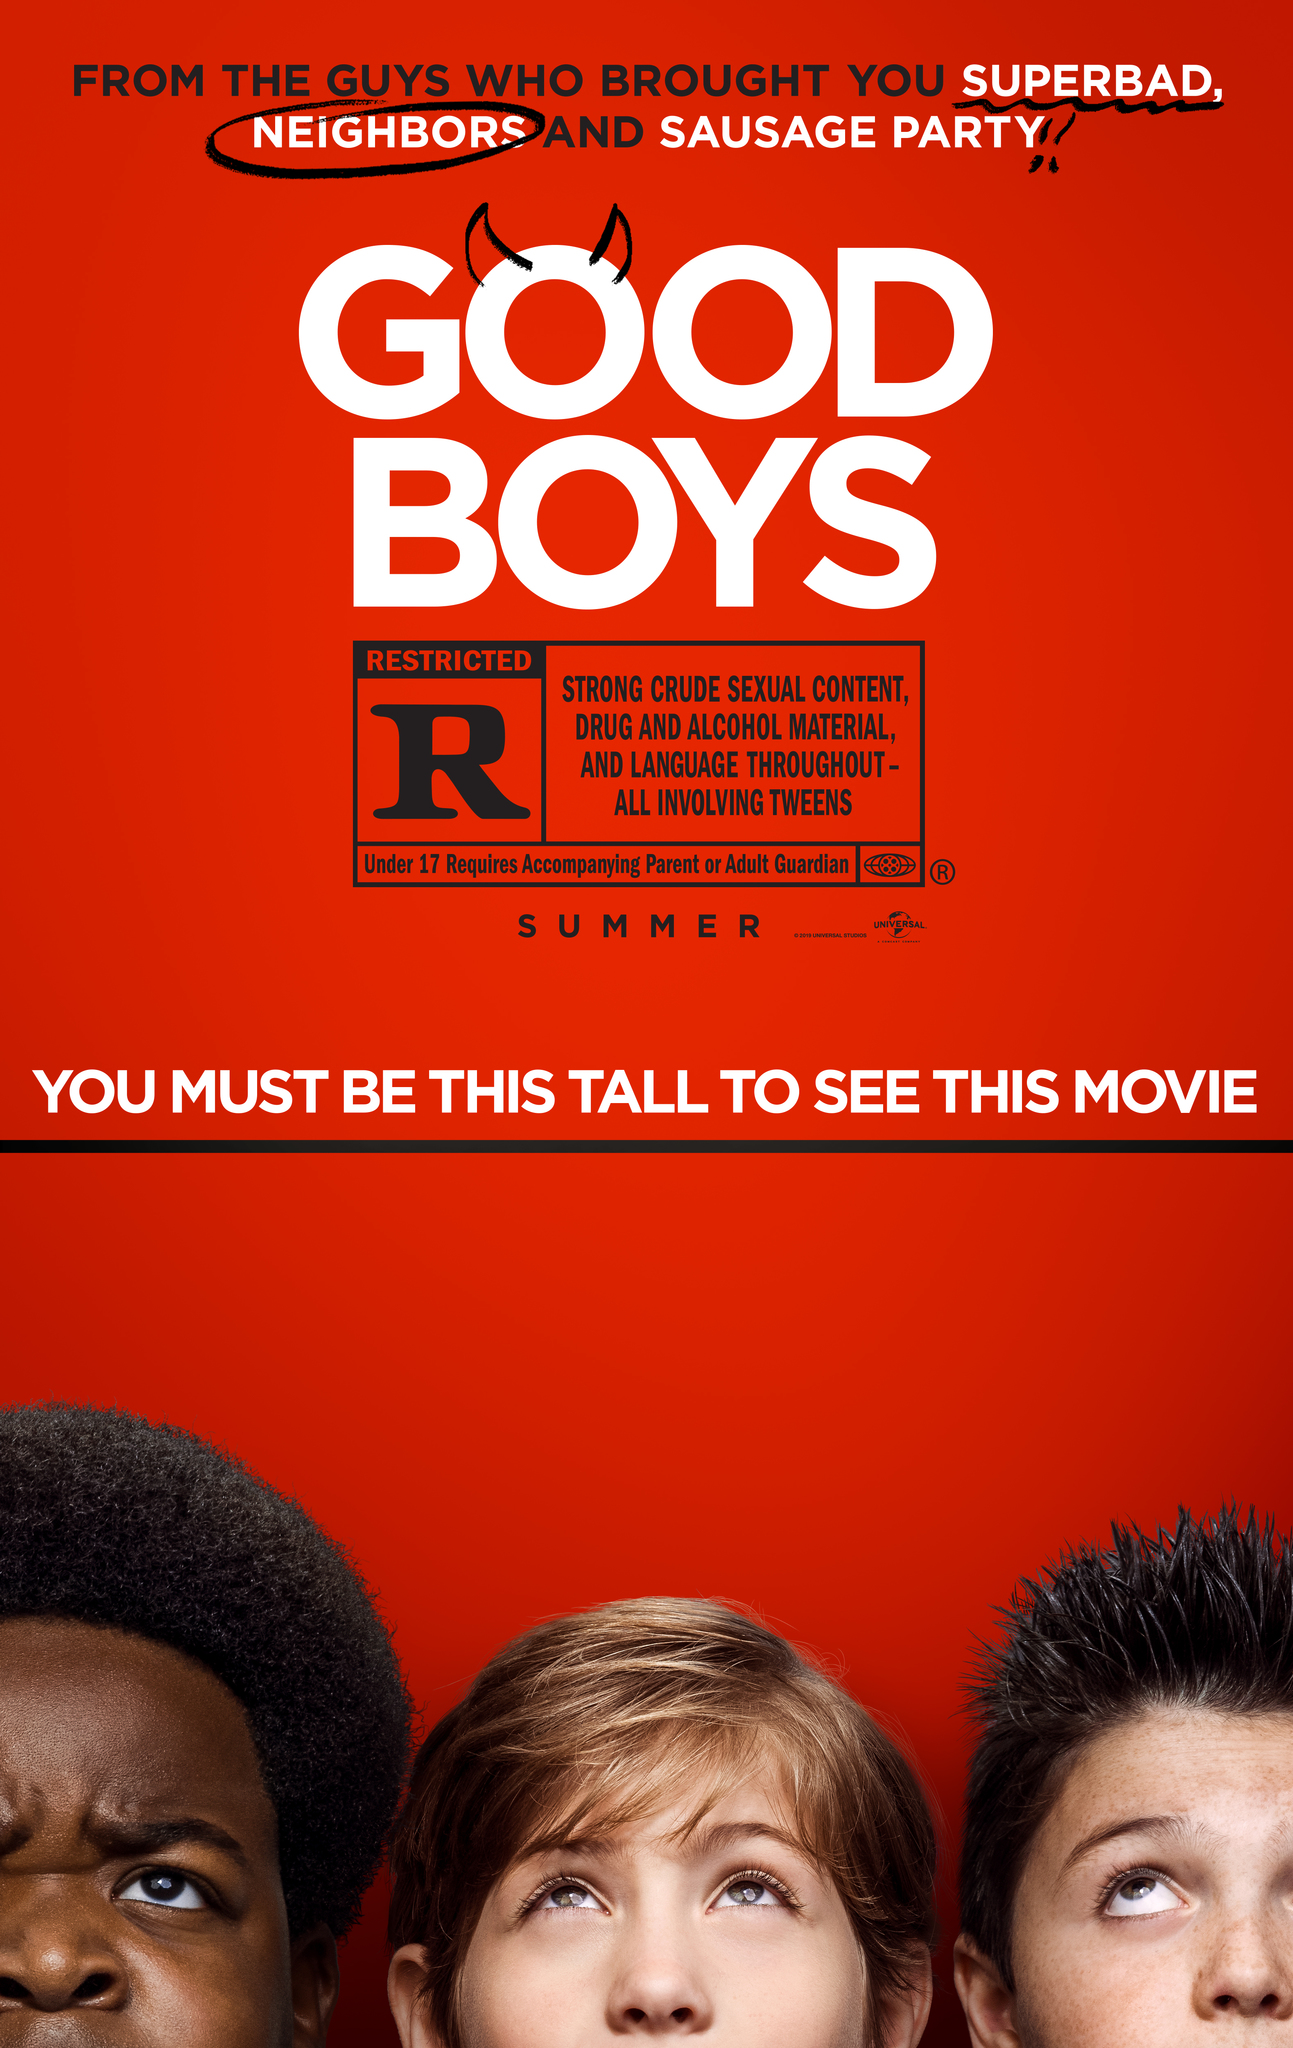 ดูหนังออนไลน์ฟรี Good Boys (2019) เด็กดีที่ไหน